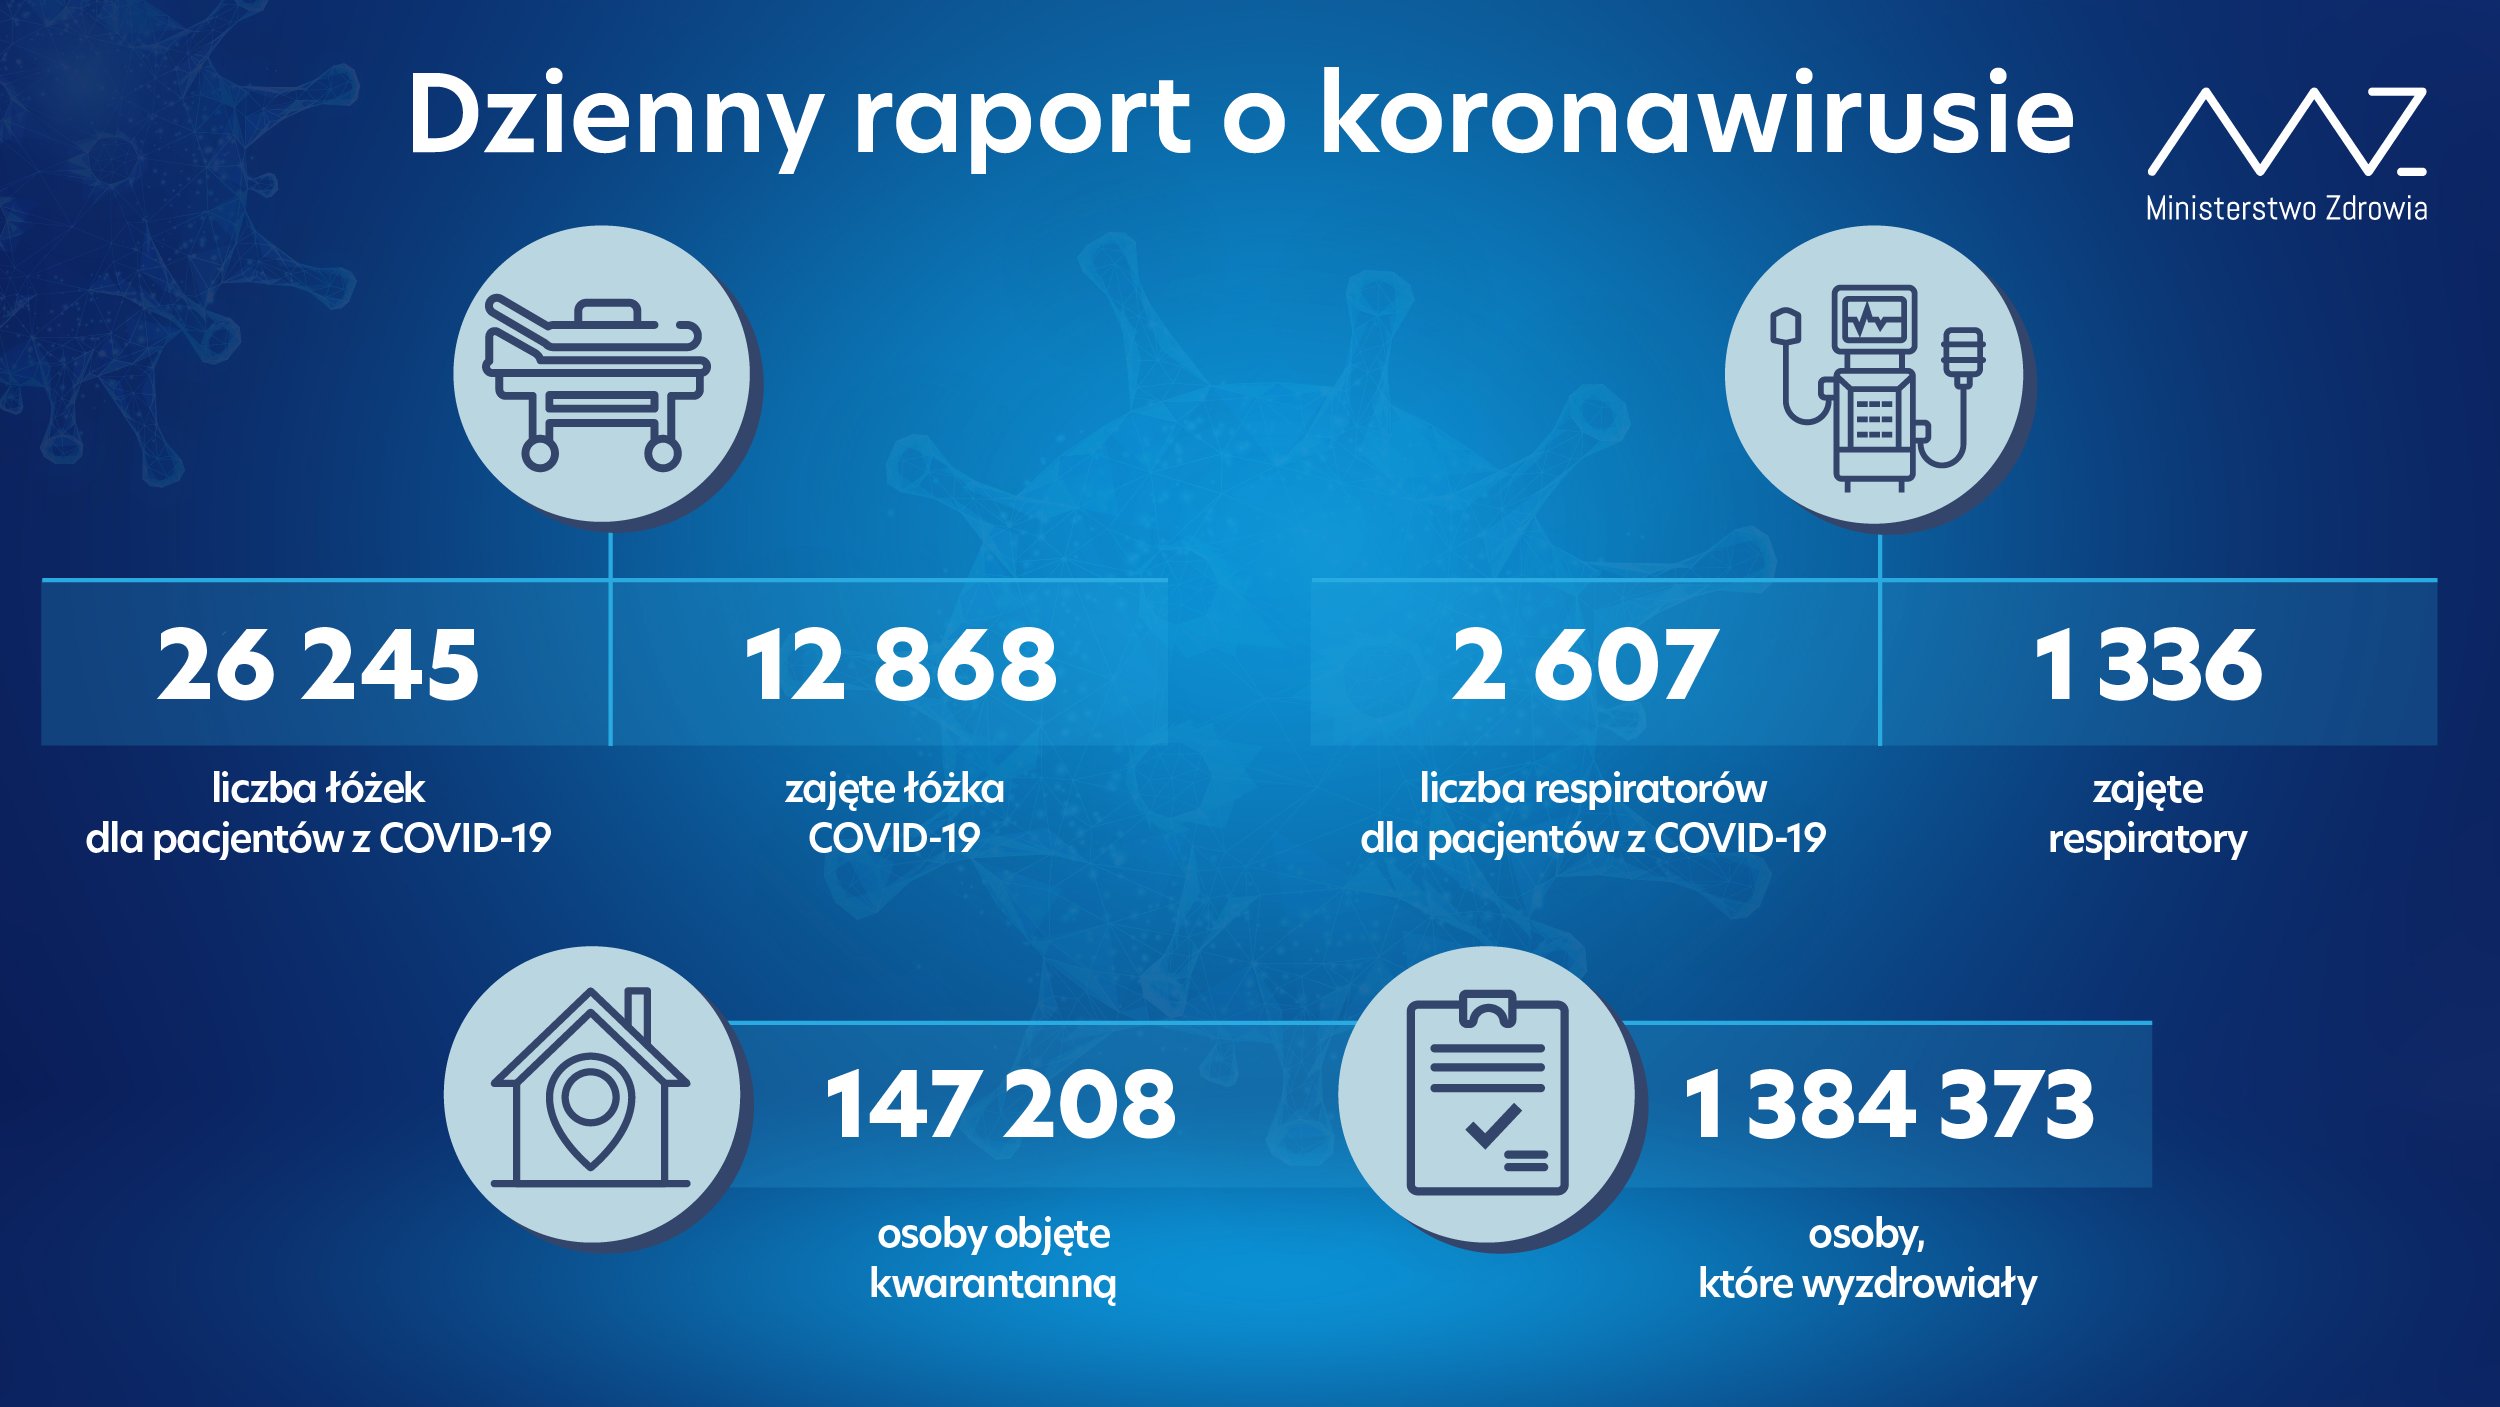 Wzrost liczby osób hospitalizowanych w kraju z powodu COVID-19. Nowe dane Ministerstwa Zdrowia